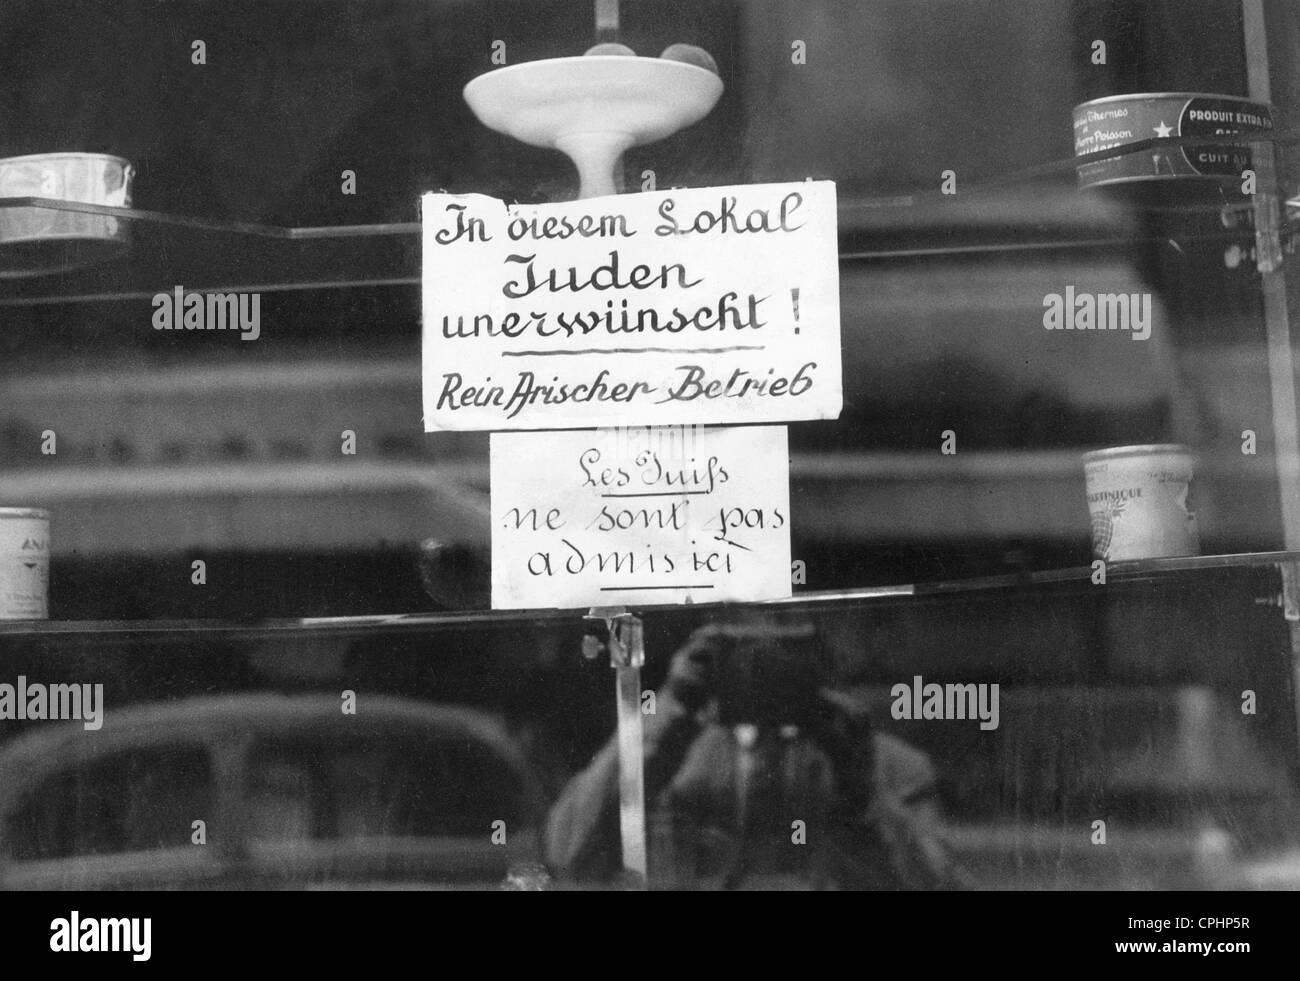 anmeldung-zum-verbot-juden-aus-betreten-ein-restaurant-in-der-rue-de-choiseul-paris-18-juli-1941-sw-foto-cphp5r.jpg